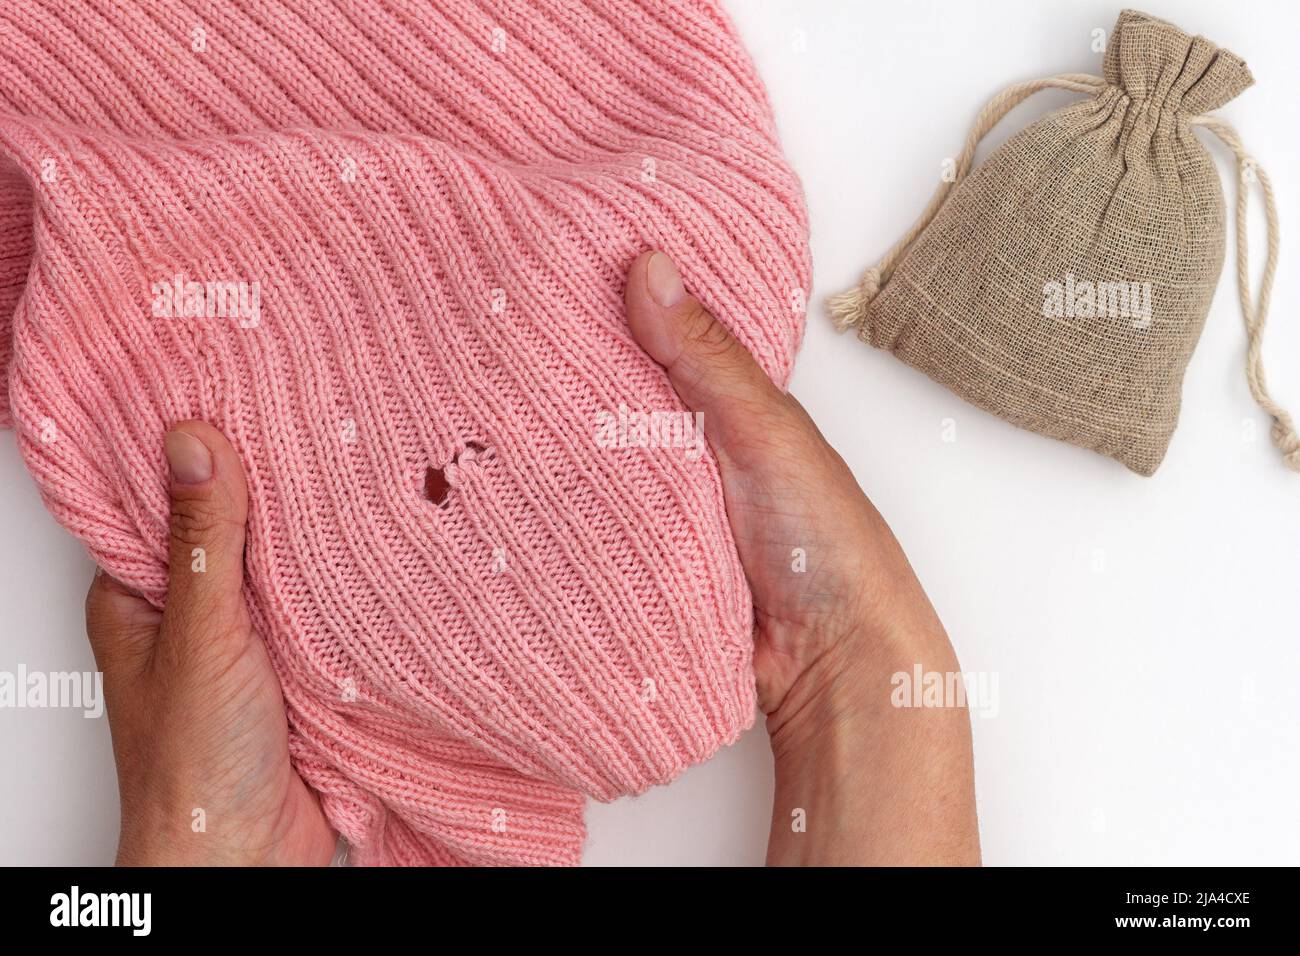 Vue du dessus de la femme courte mains tenant le tissu de laine rose avec trou fait par papillon et sac avec herbe sèche sur fond blanc Banque D'Images